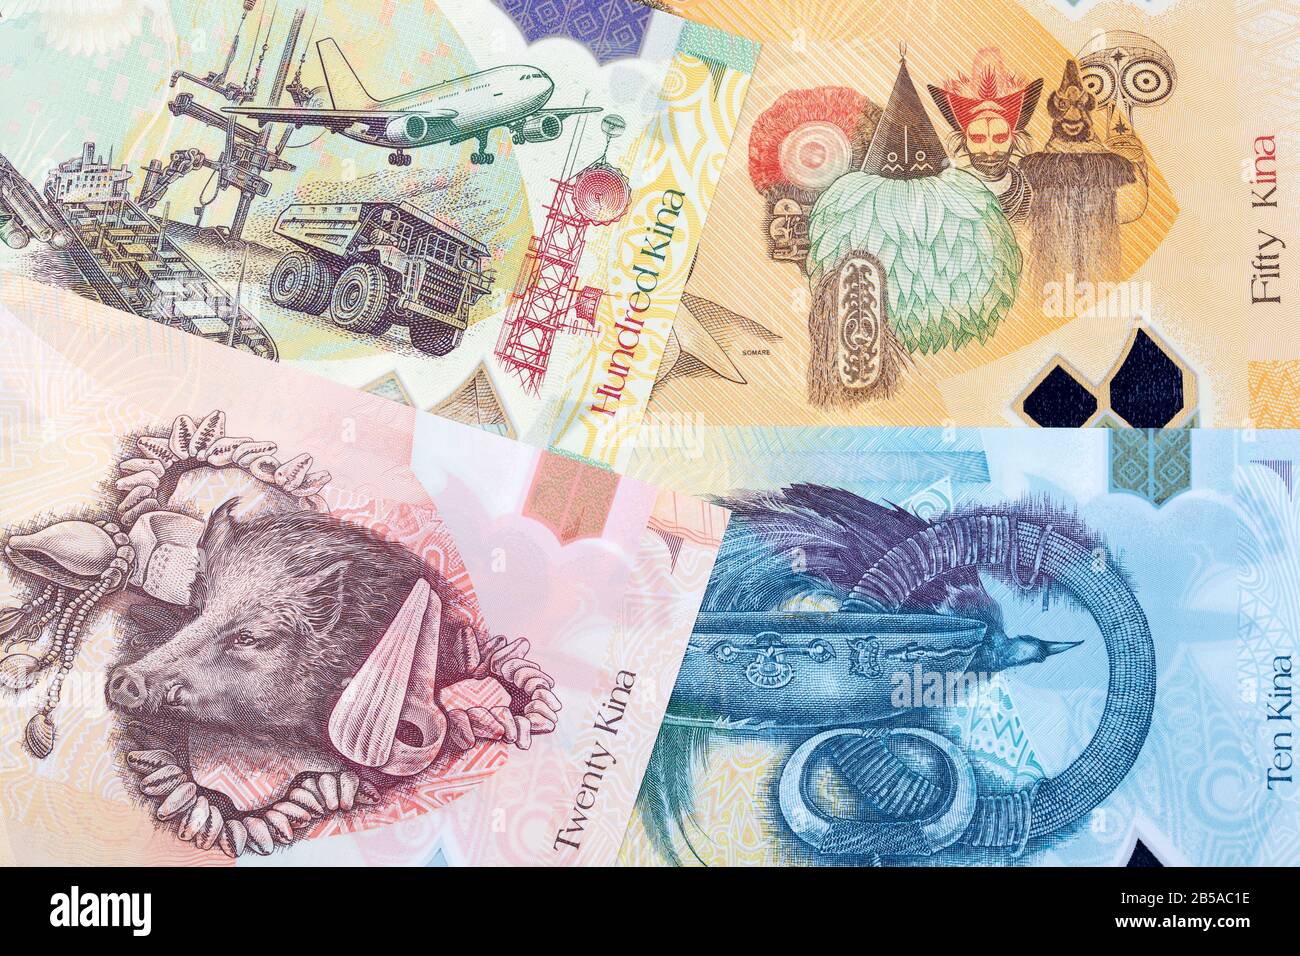 Papouasie-Nouvelle-Guinée argent - kina un contexte d'affaires Banque D'Images